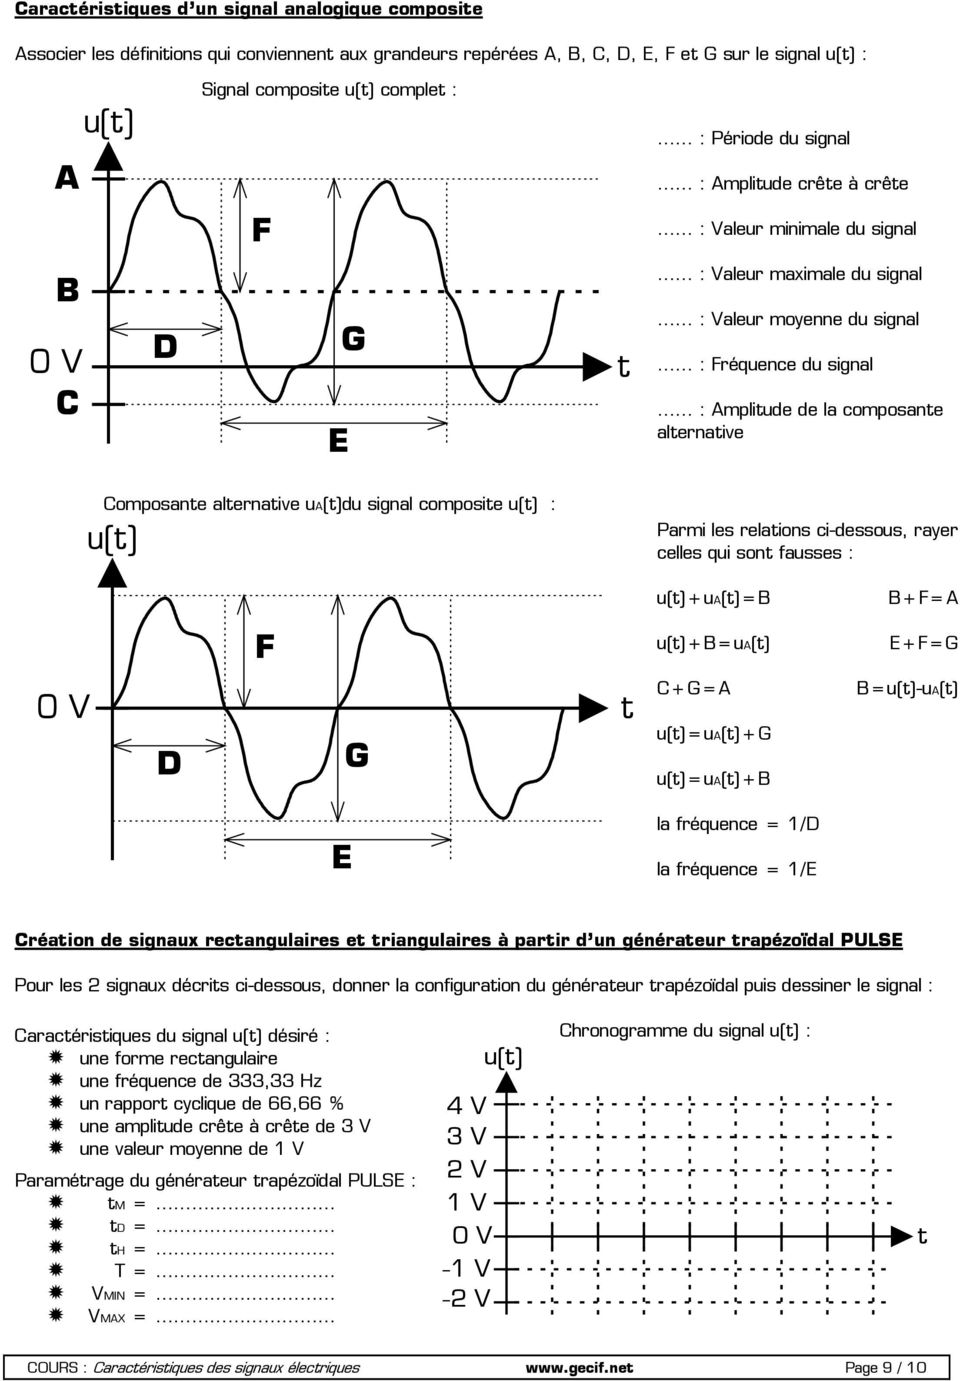 alernaive ua()du signal composie u() : u() Parmi les relaions ci-dessous, rayer celles qui son fausses : u()+ua()=b B+F=A F u()+b=ua() E+F=G D G C+G=A u()=ua()+g u()=ua()+b B=u()-uA() E la fréquence